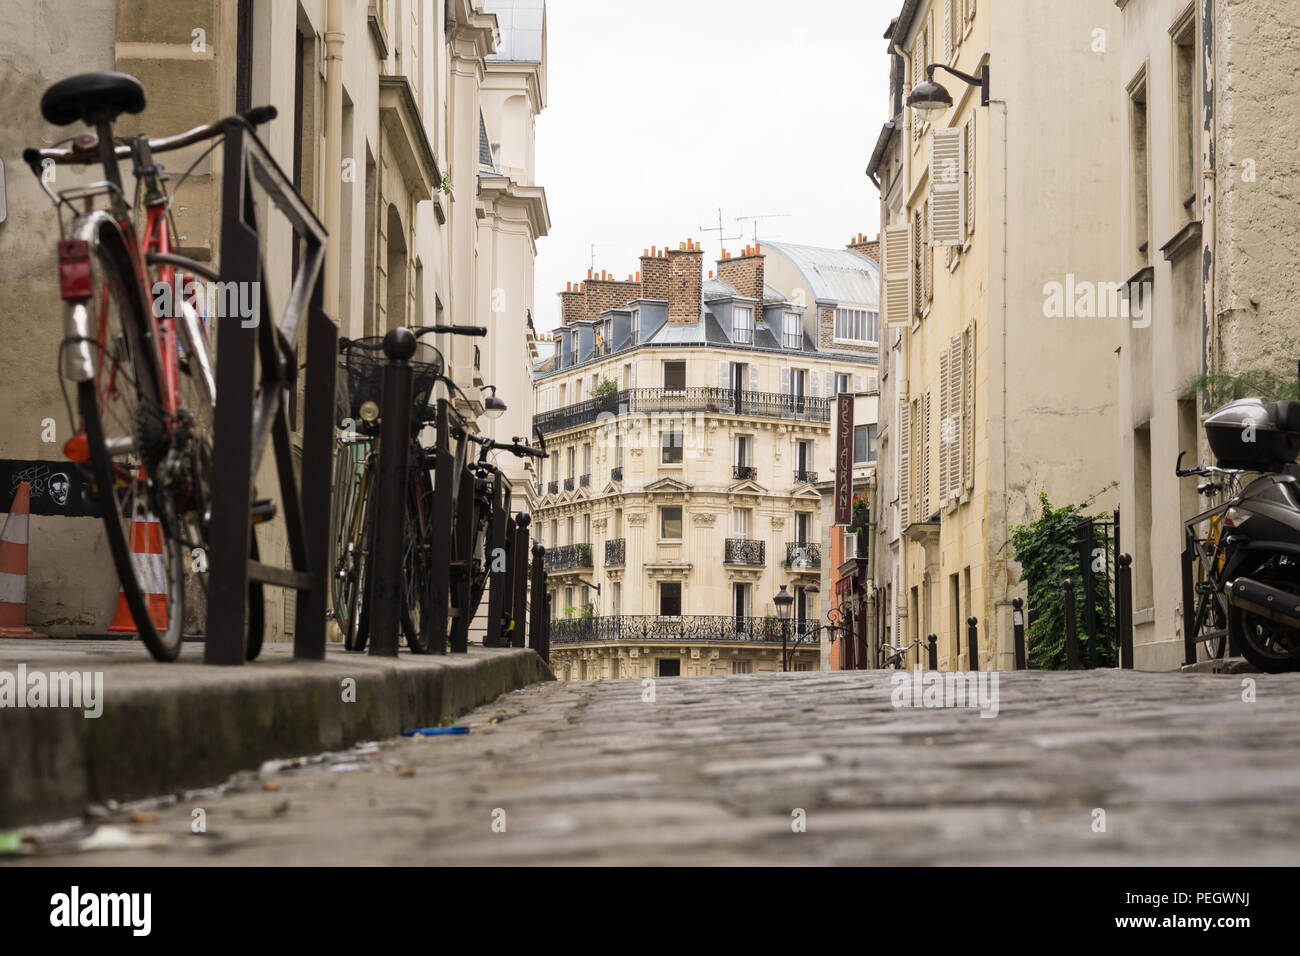 Paris street - basso angolo di visione di una strada nel quartiere latino. Foto Stock